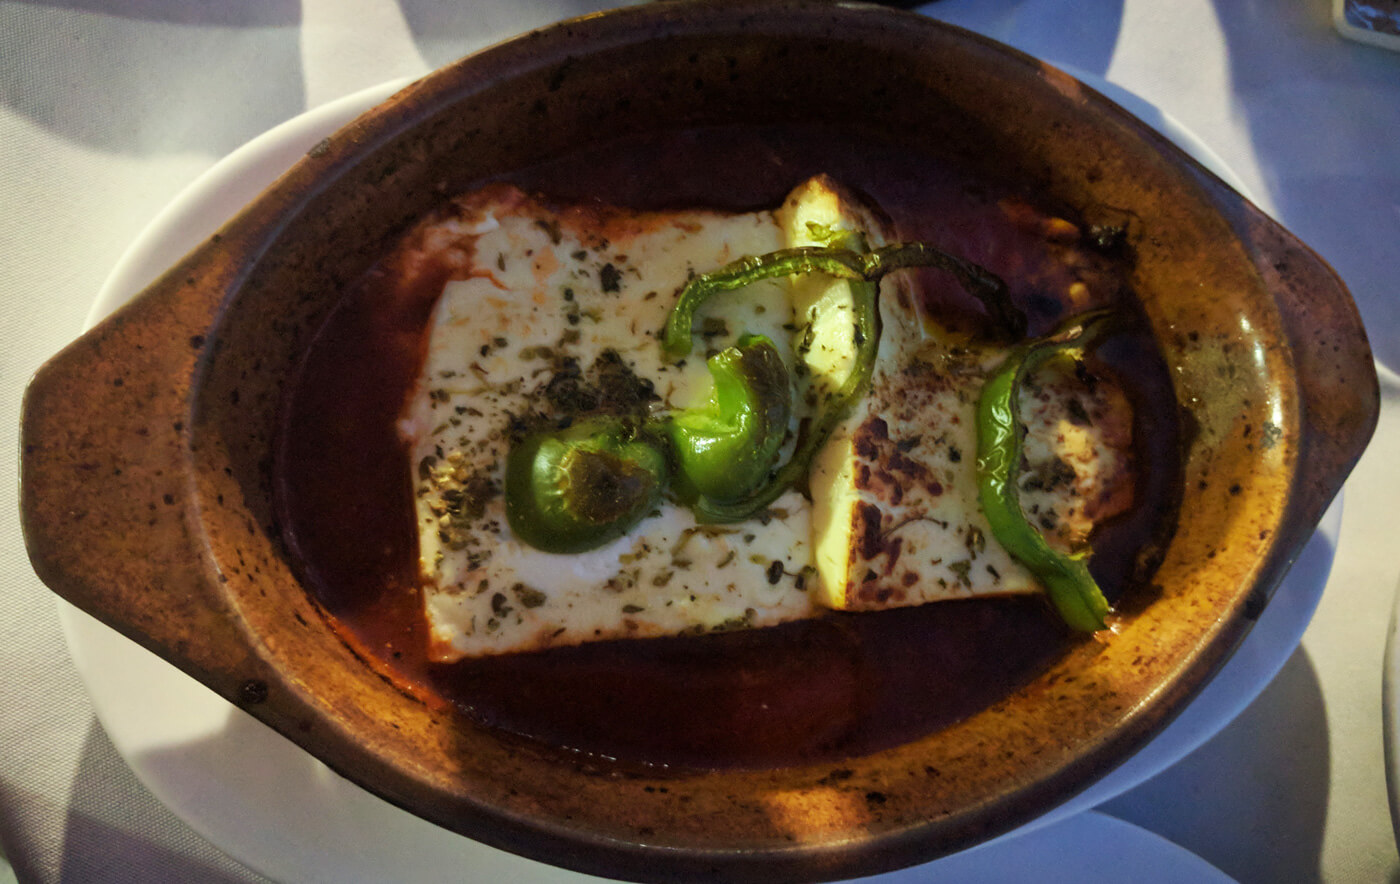 Запеченный сыр фета - популярное греческое блюдо, которое подают на гарнир